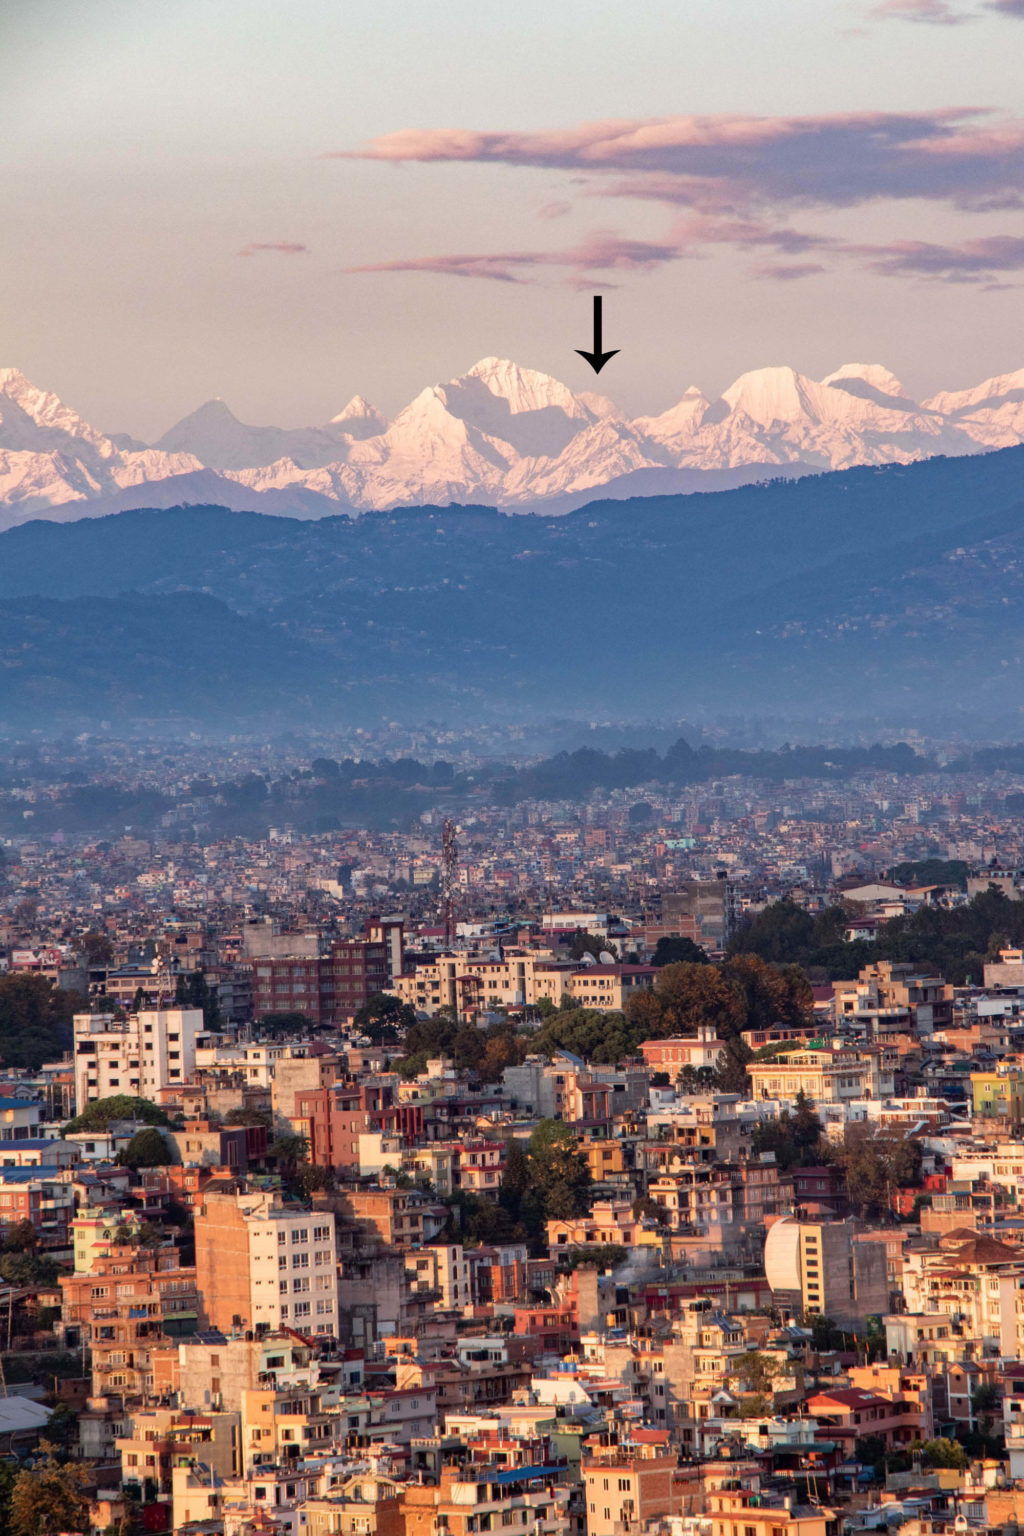 COVID-19-proves-that-Kathmandu-can-be-cleaned-up-2-min-1024x1536.jpg